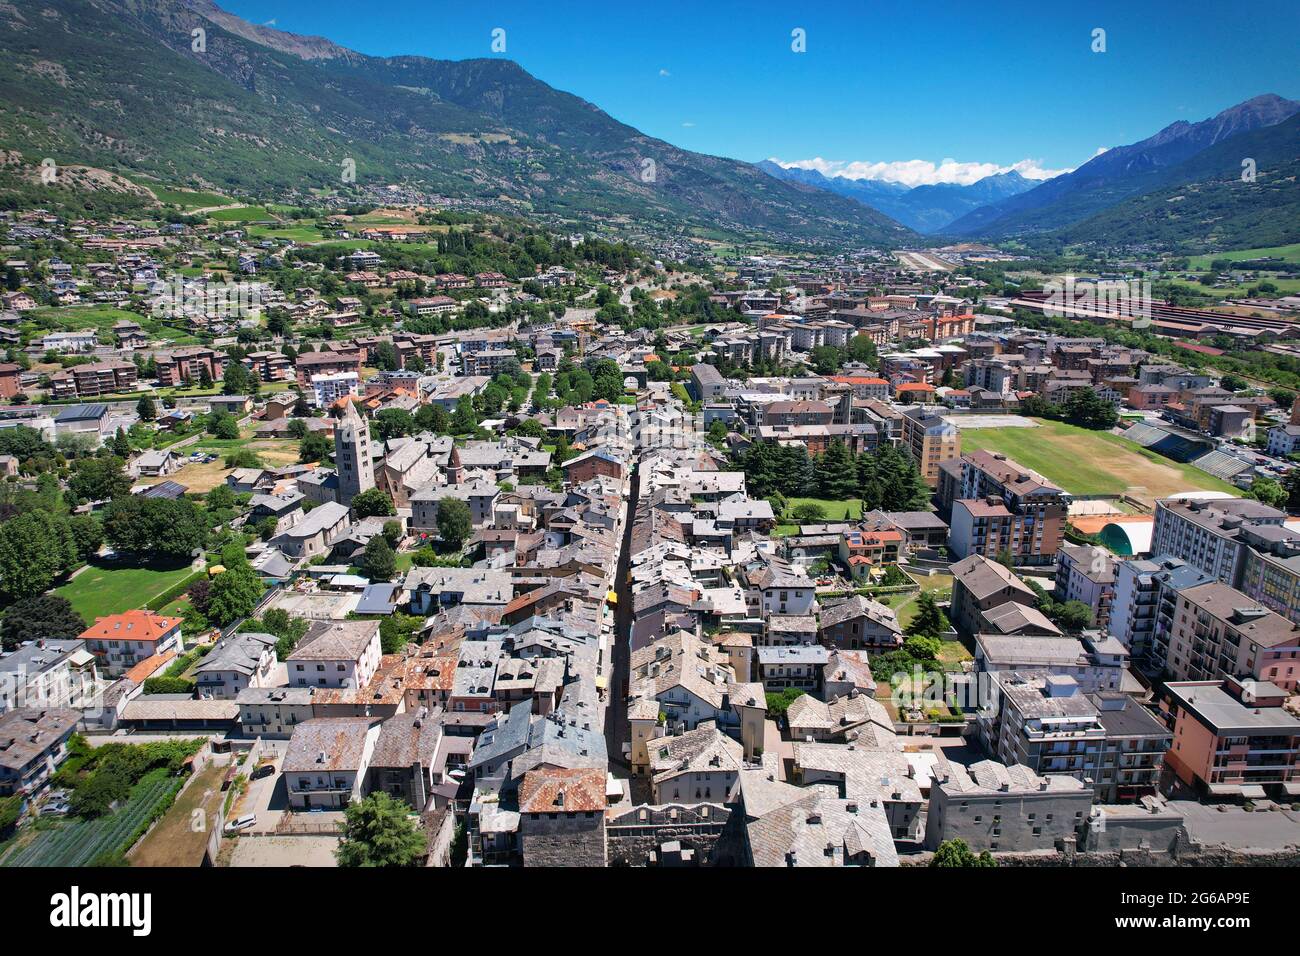 Vista aérea del centro de la ciudad y de la plaza principal de Aosta. Italia Foto de stock